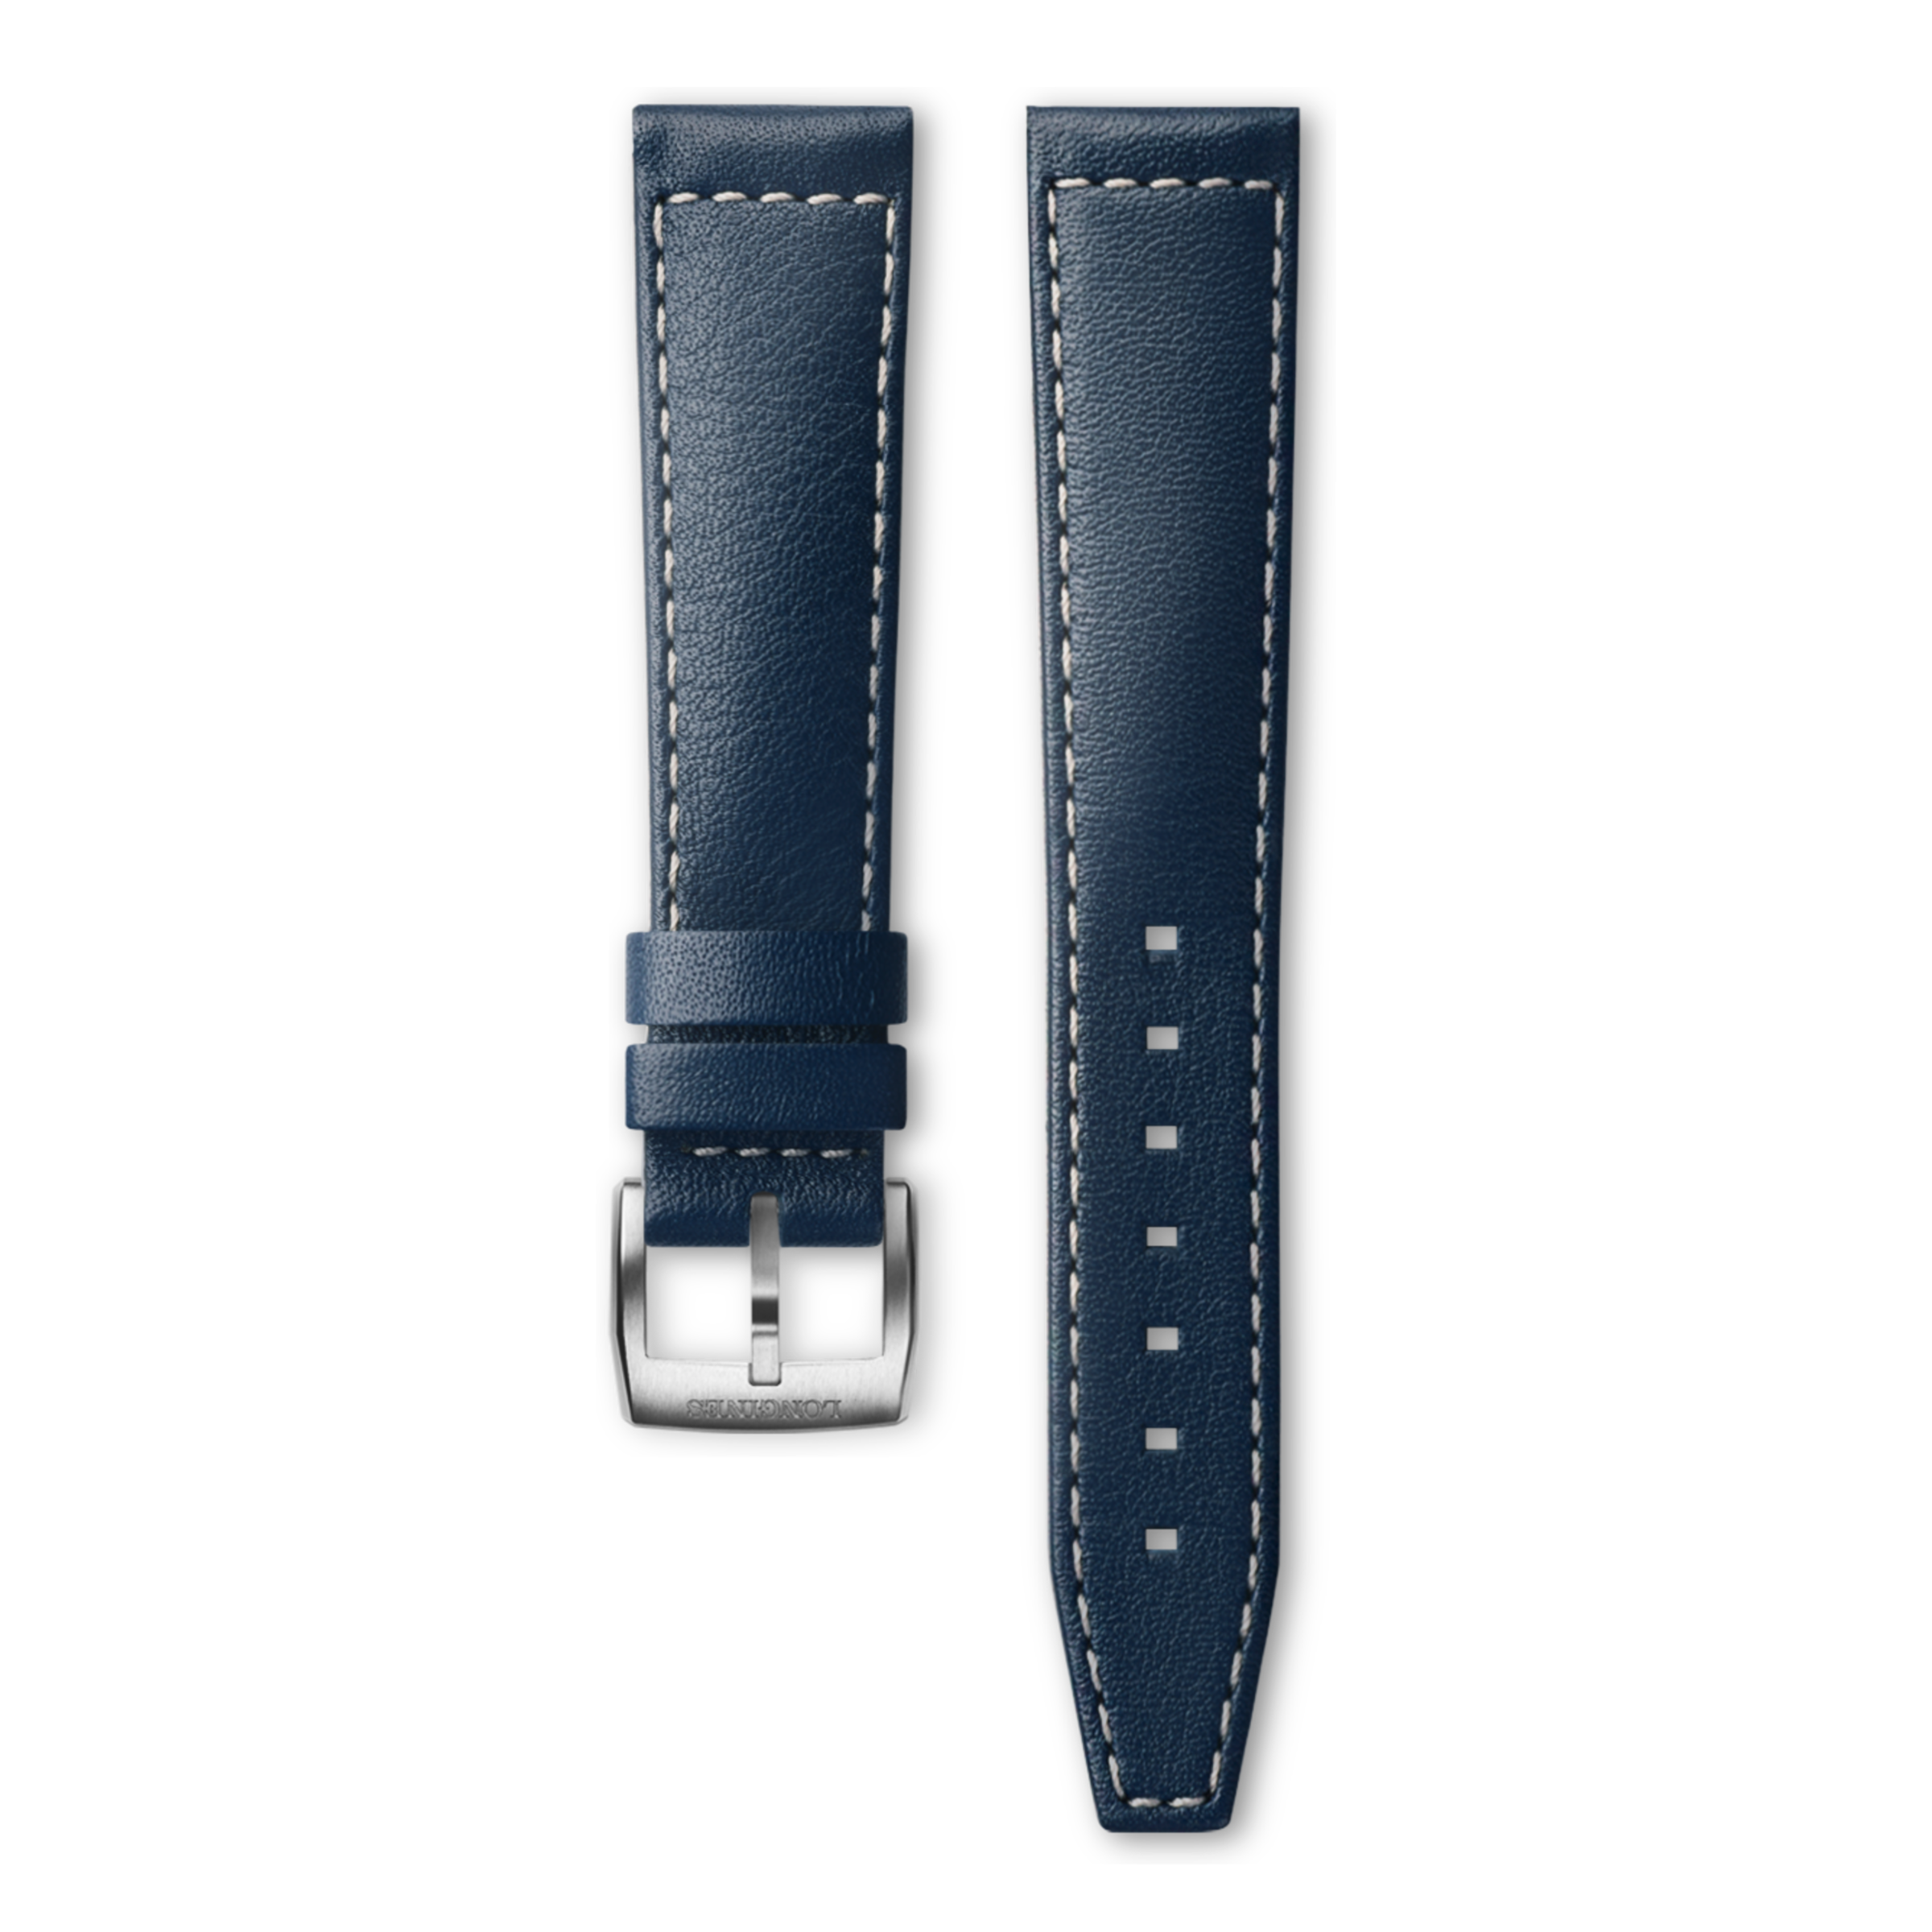 Semi matt blue calf leather strap